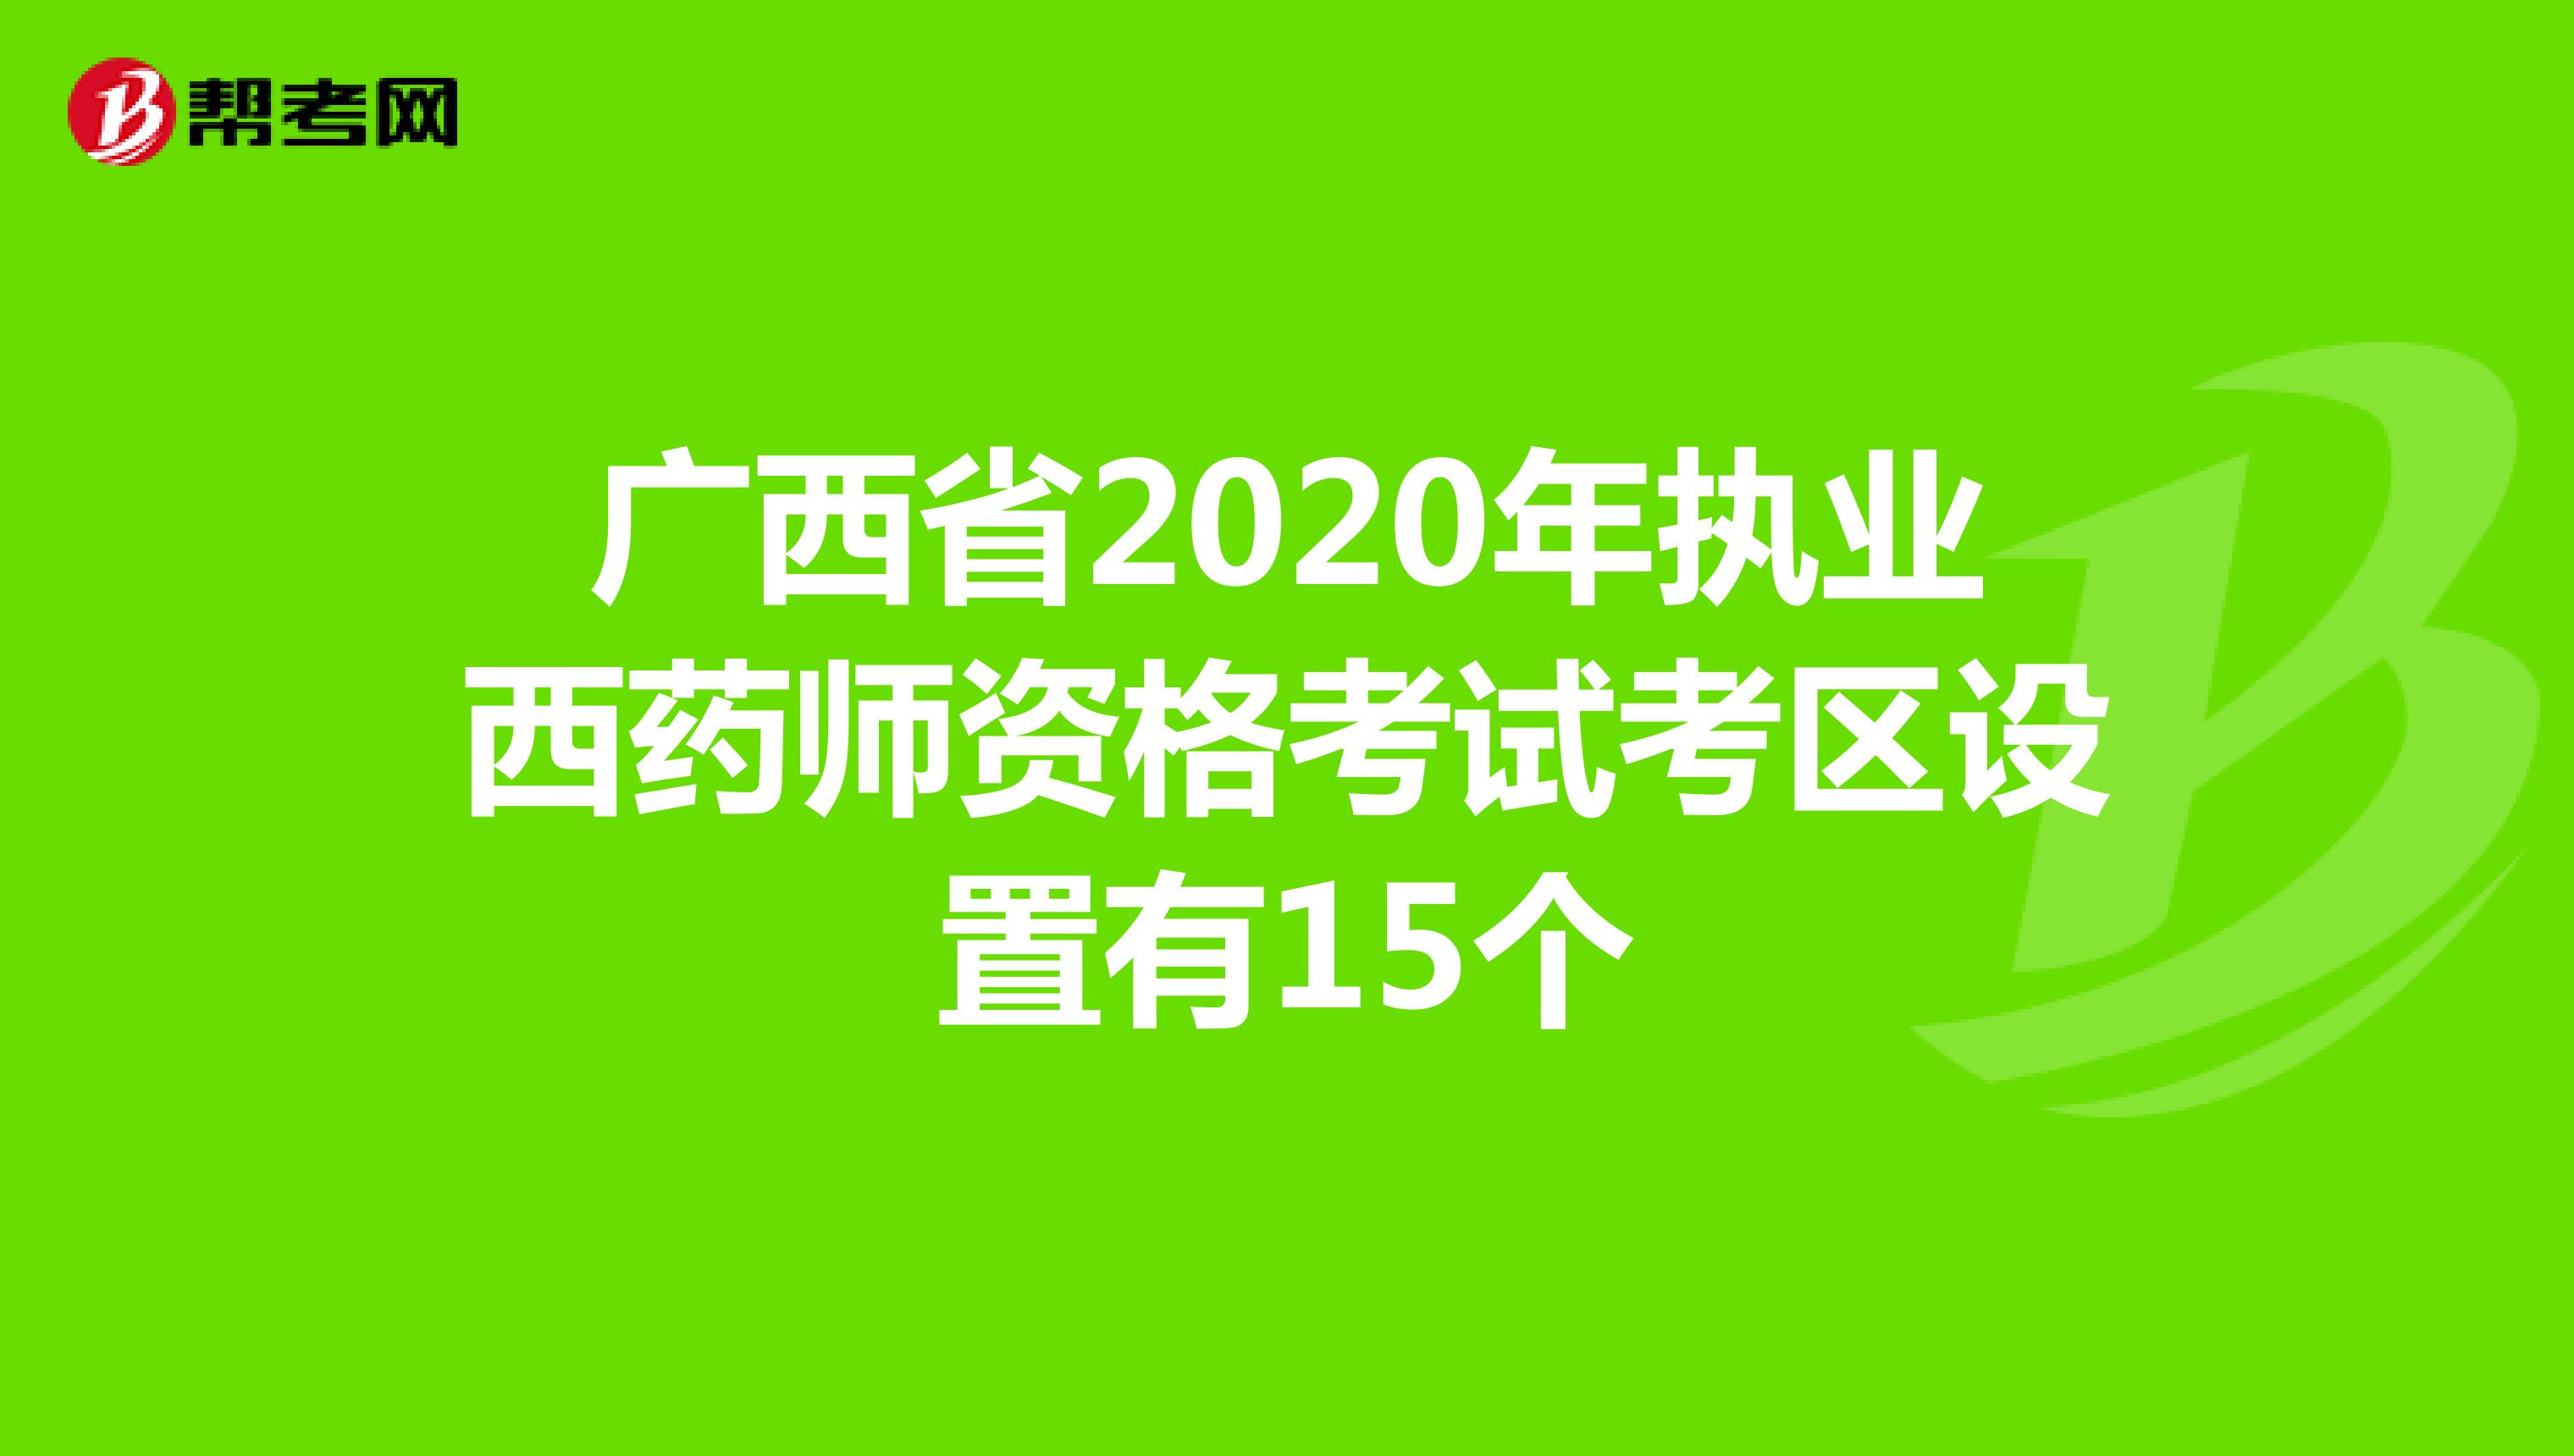 广西省2020年执业西药师资格考试考区设置有15个